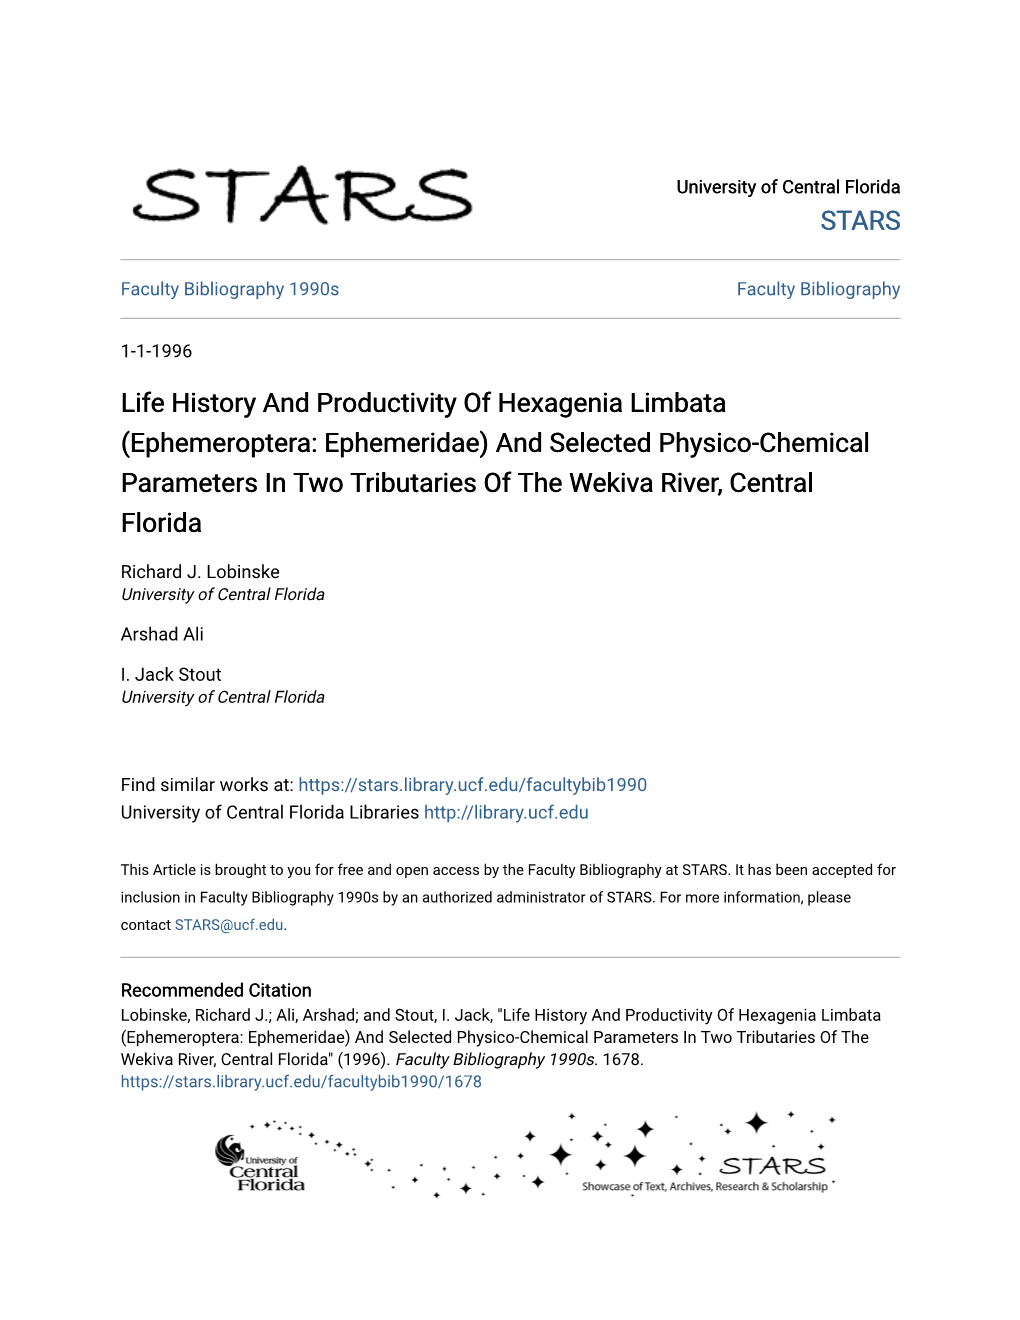 Life History and Productivity of Hexagenia Limbata